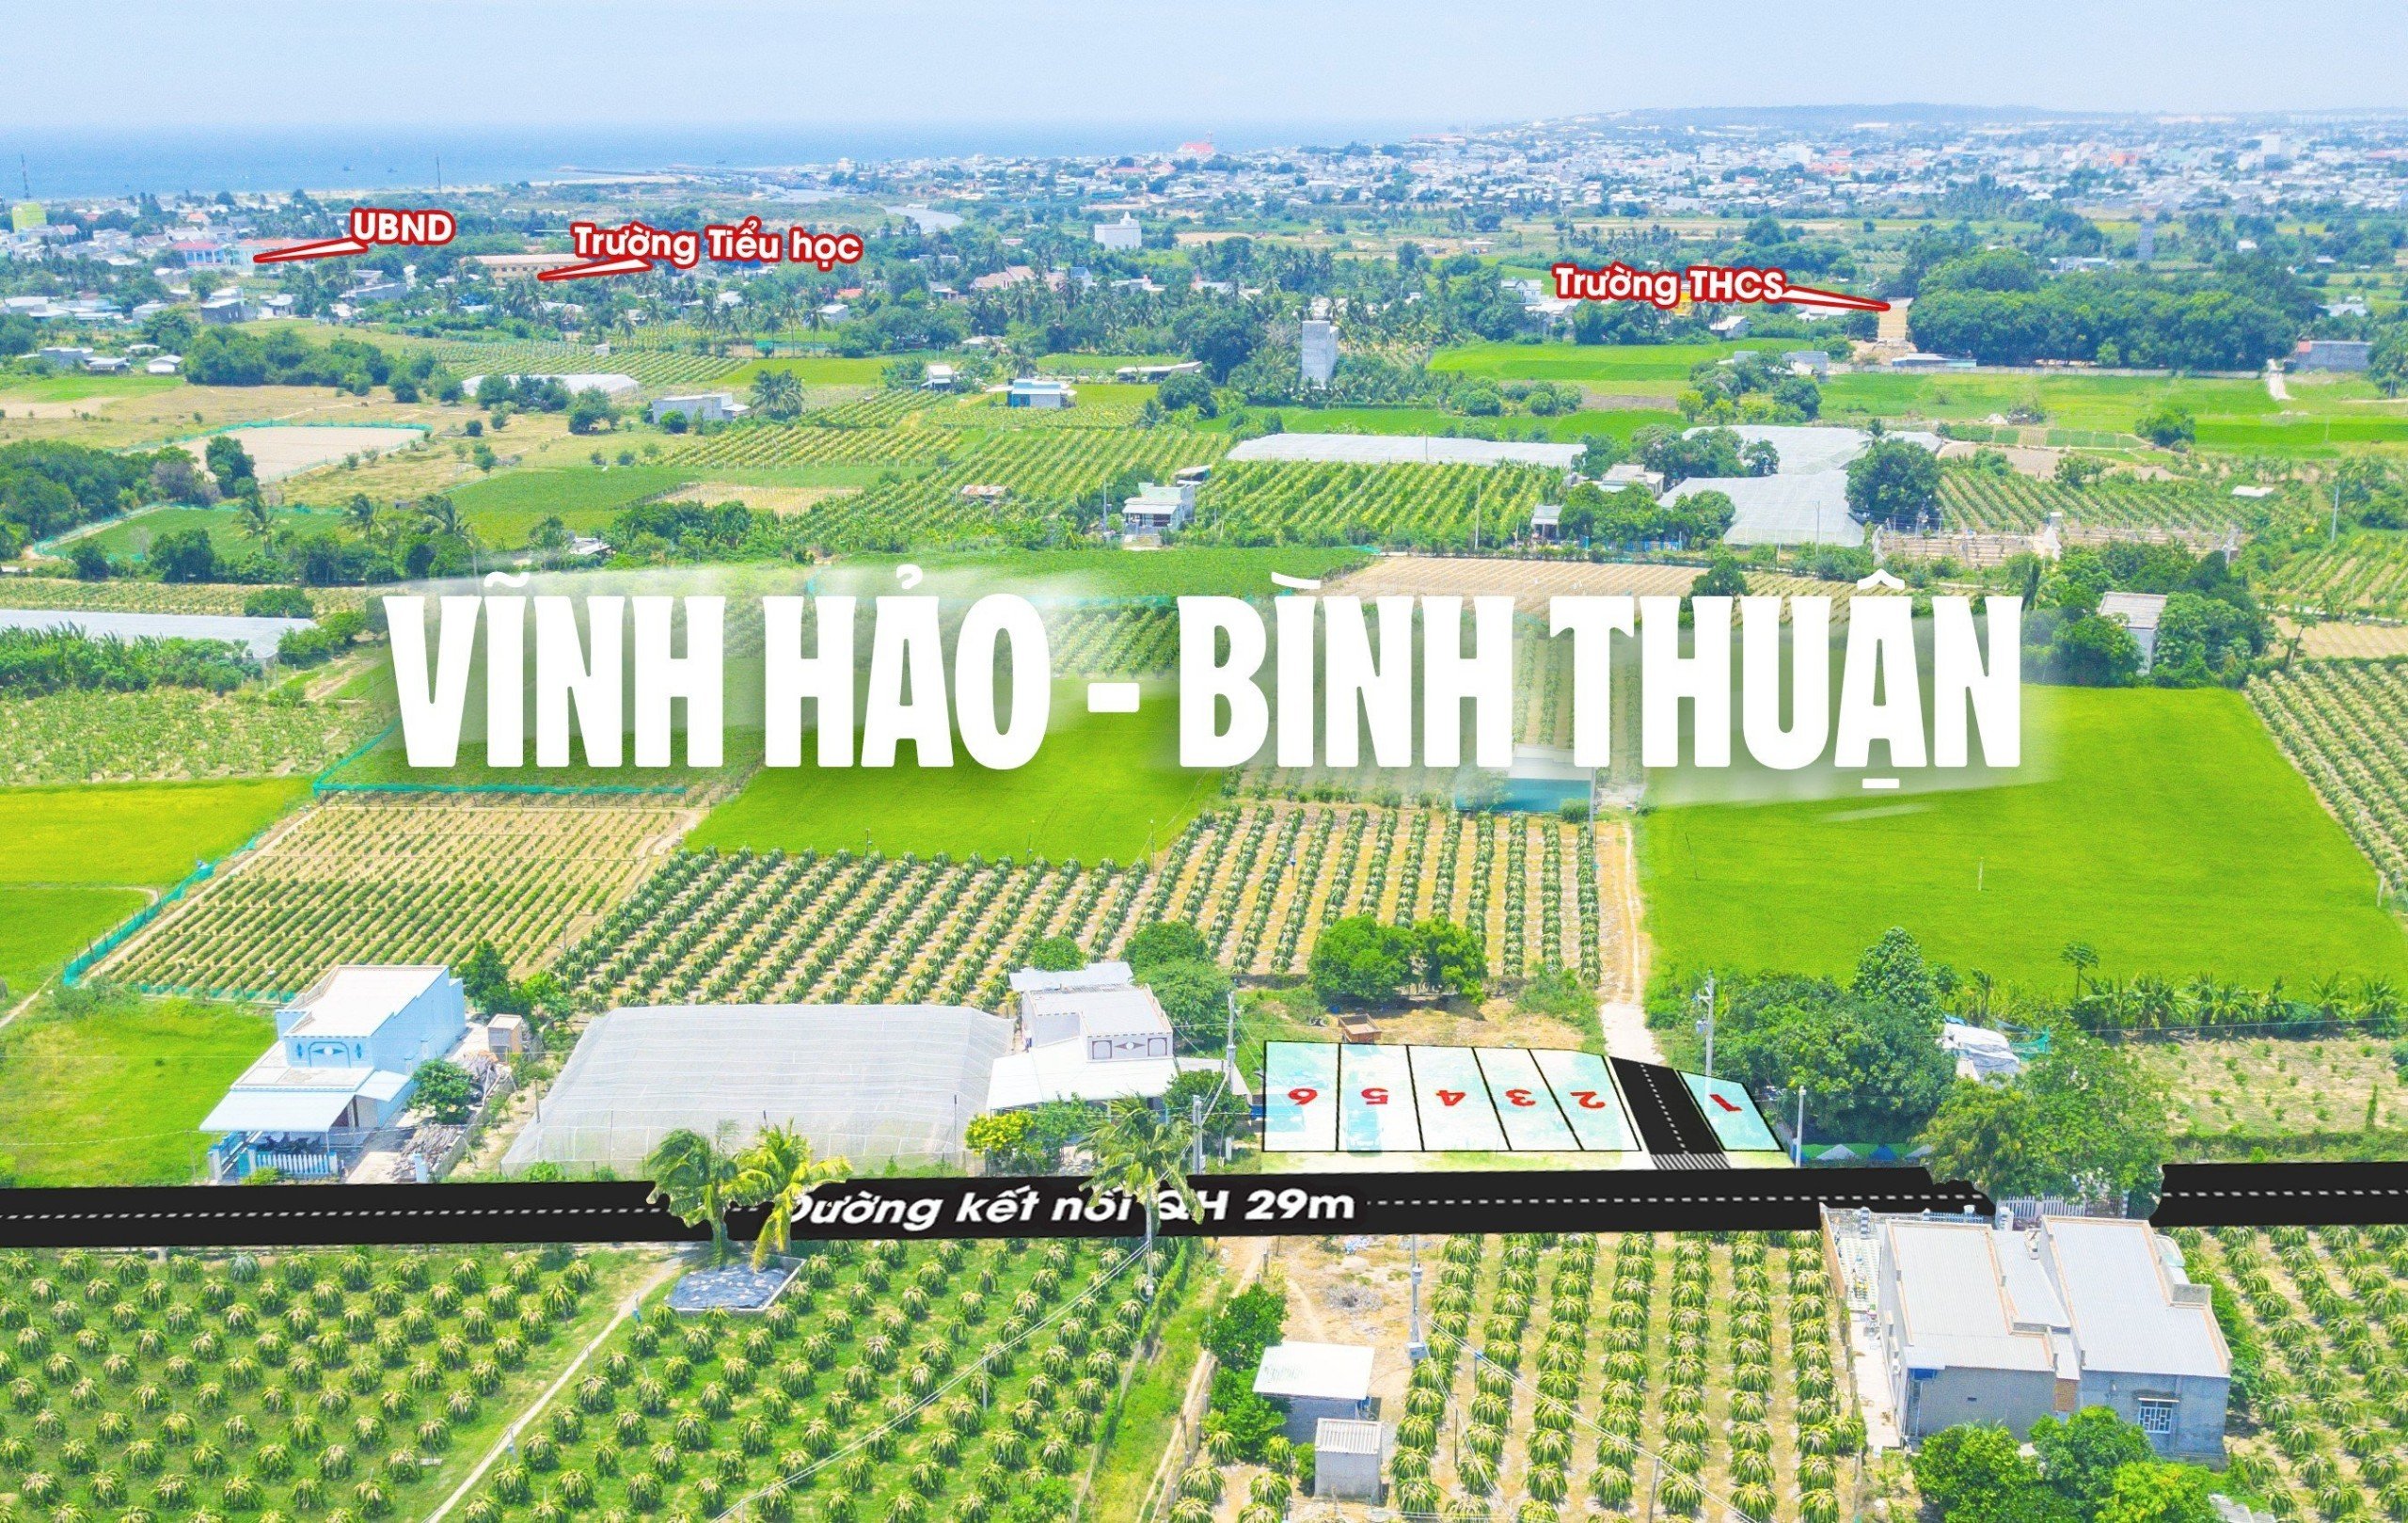 Đón đầu siêu hạ tầng - Đất biển Bình Thuận kết nối nhanh sân bay Phan Thiết